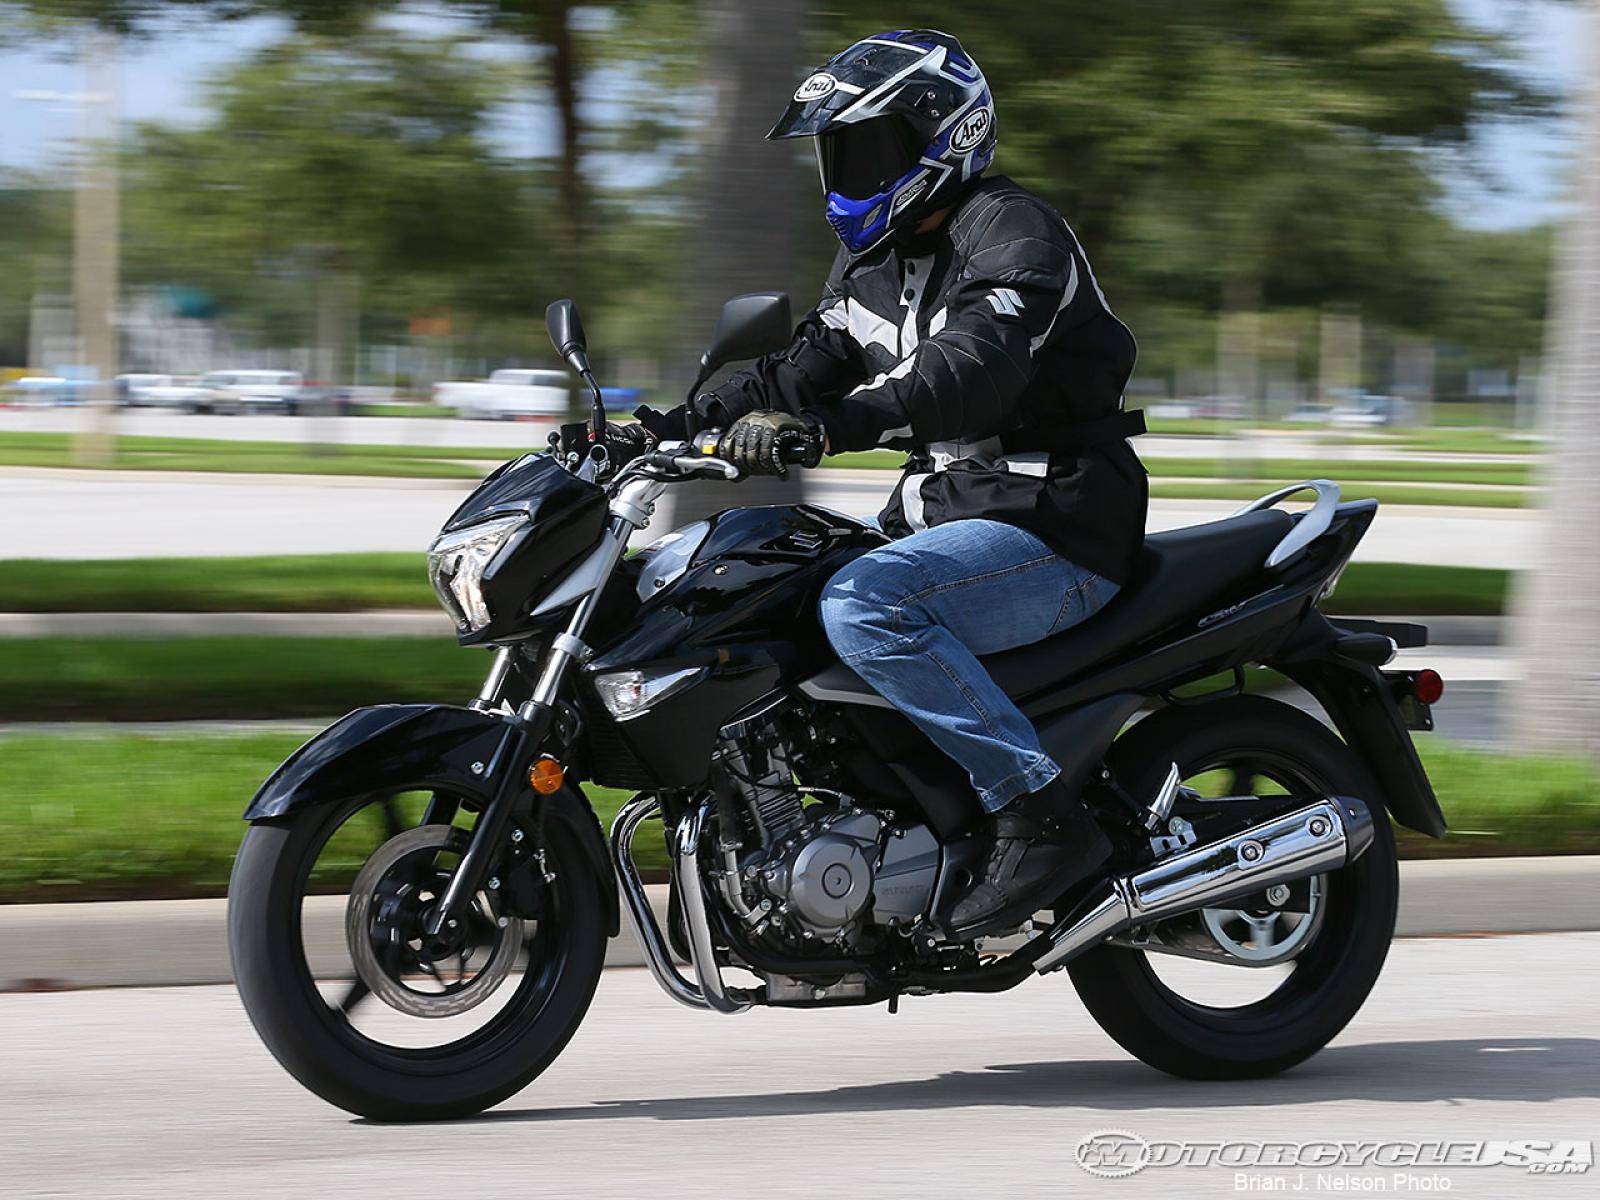 Suzuki gw250 (gsr 250, inazuma 250): review, history, specs - bikeswiki.com, japanese motorcycle encyclopedia